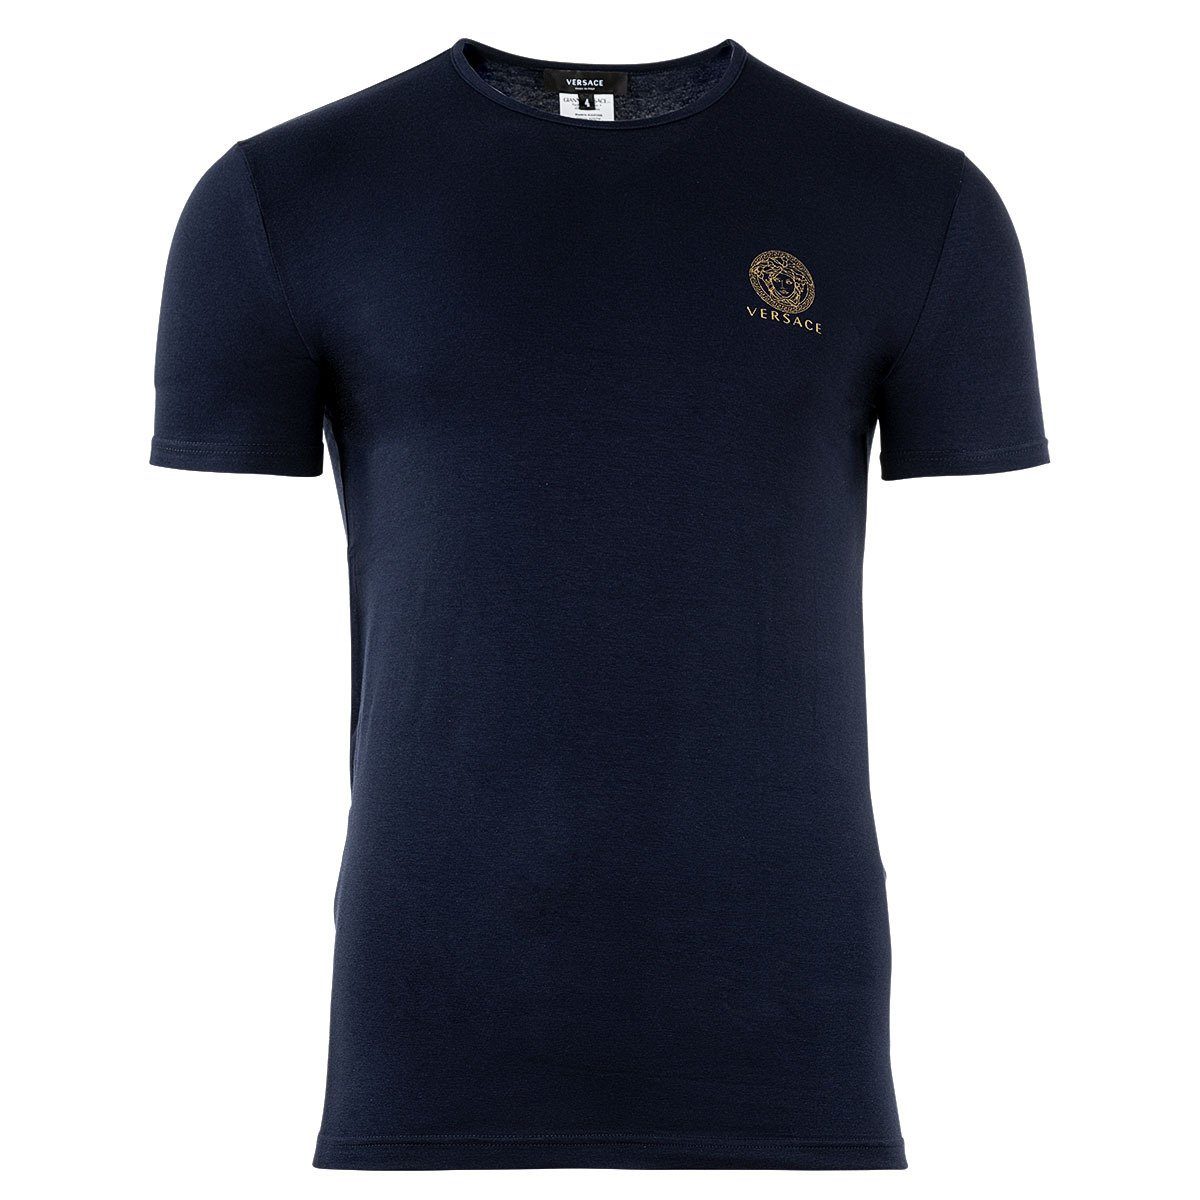 Versace T-Shirt Herren T-Shirt - Unterhemd, Rundhals, Stretch Blau